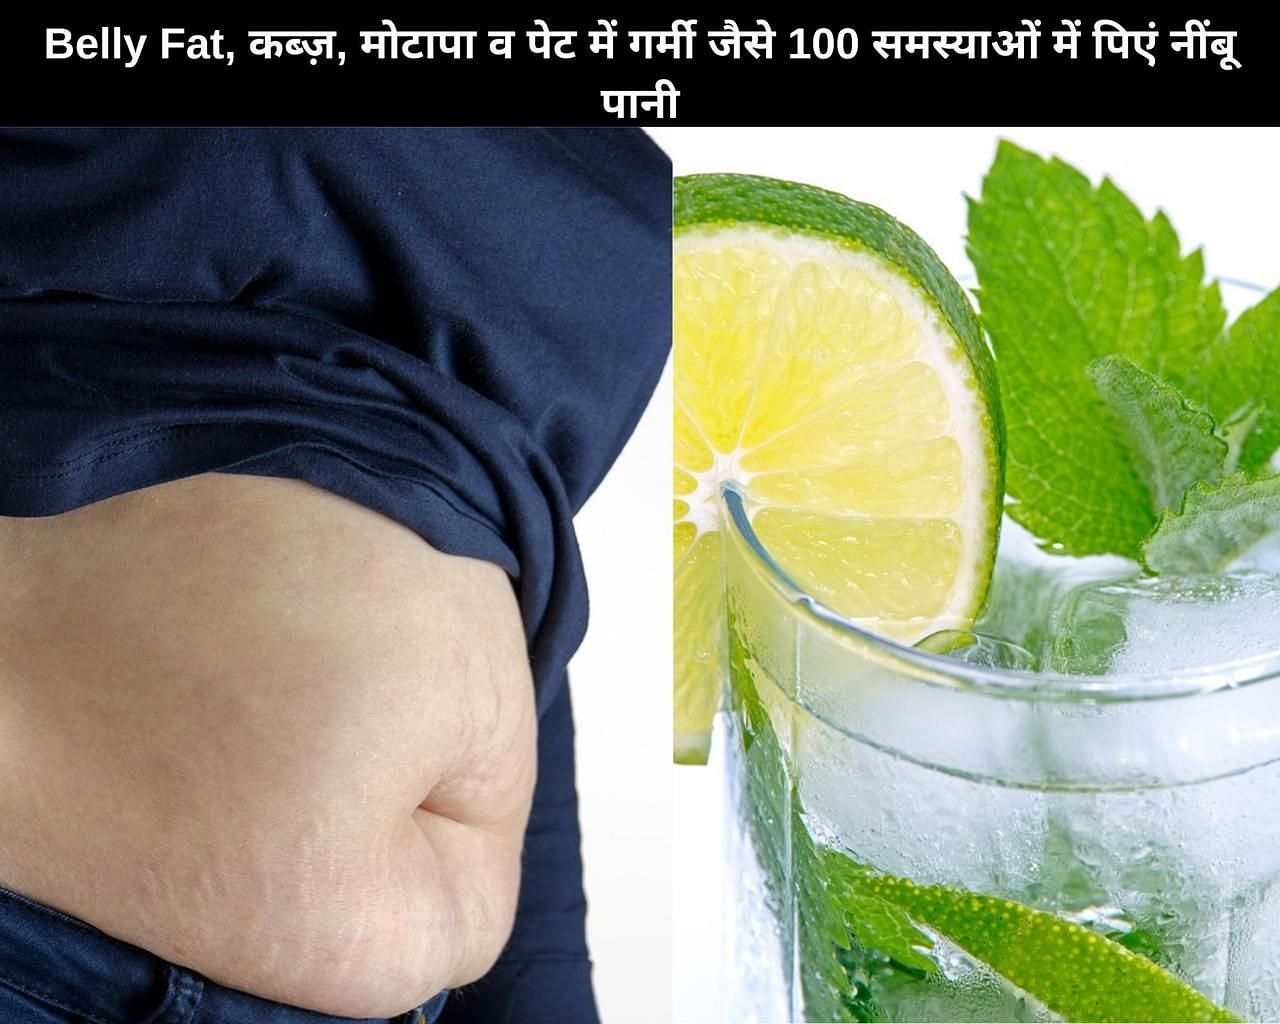 Belly Fat, कब्ज़, मोटापा व पेट में गर्मी जैसे 100 समस्याओं में पिएं नींबू पानी (फोटो - sportskeedaहिन्दी)